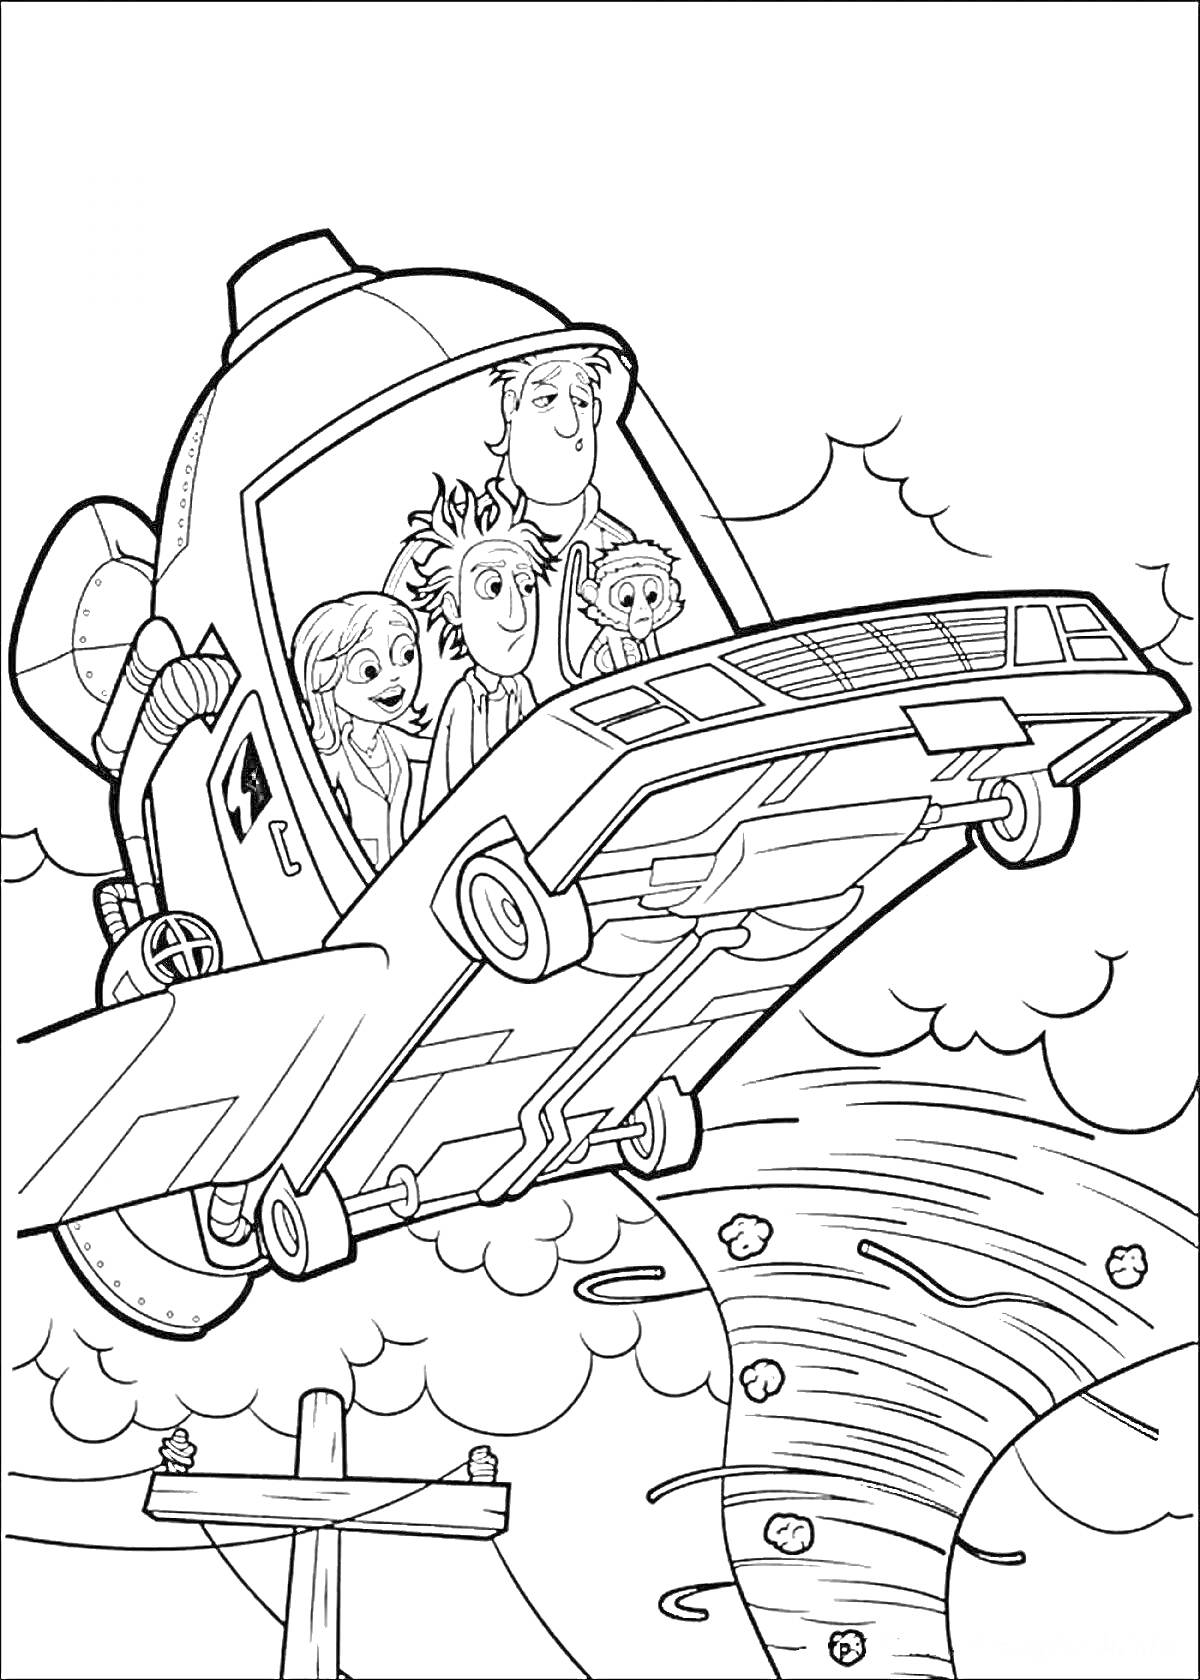 Раскраска Летательный аппарат с четырьмя персонажами внутри, летящий над торнадо из фрикаделек, облаками и электрическим столбом.